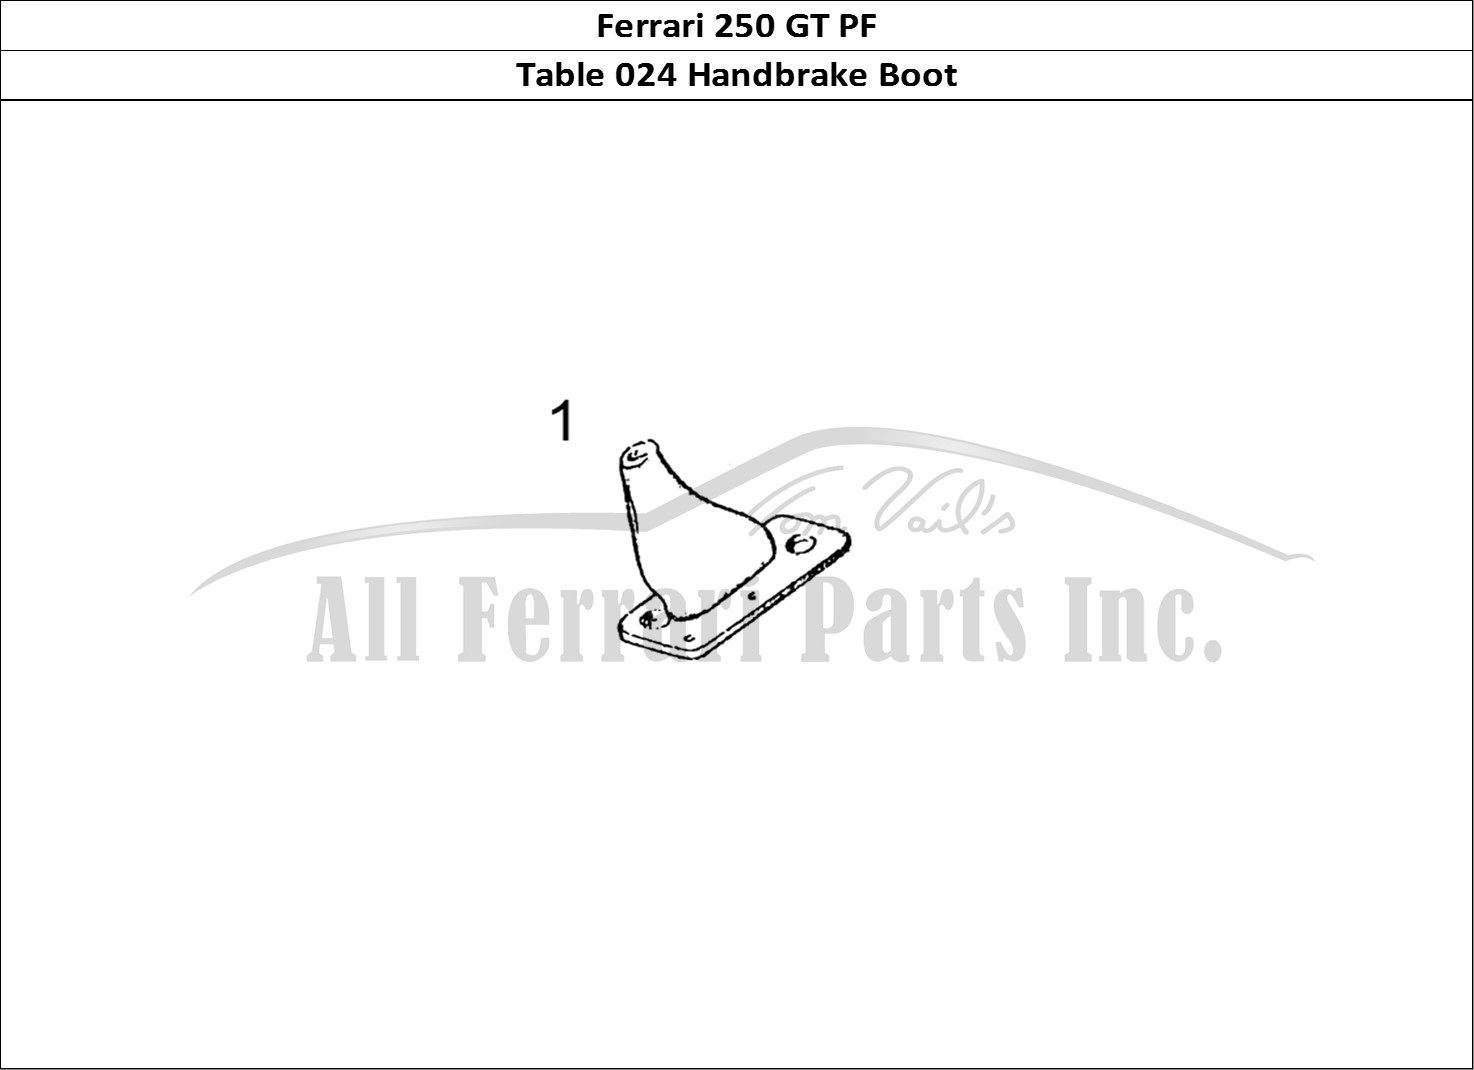 Ferrari Parts Ferrari 250 GT (Coachwork) Page 024 Handbrake